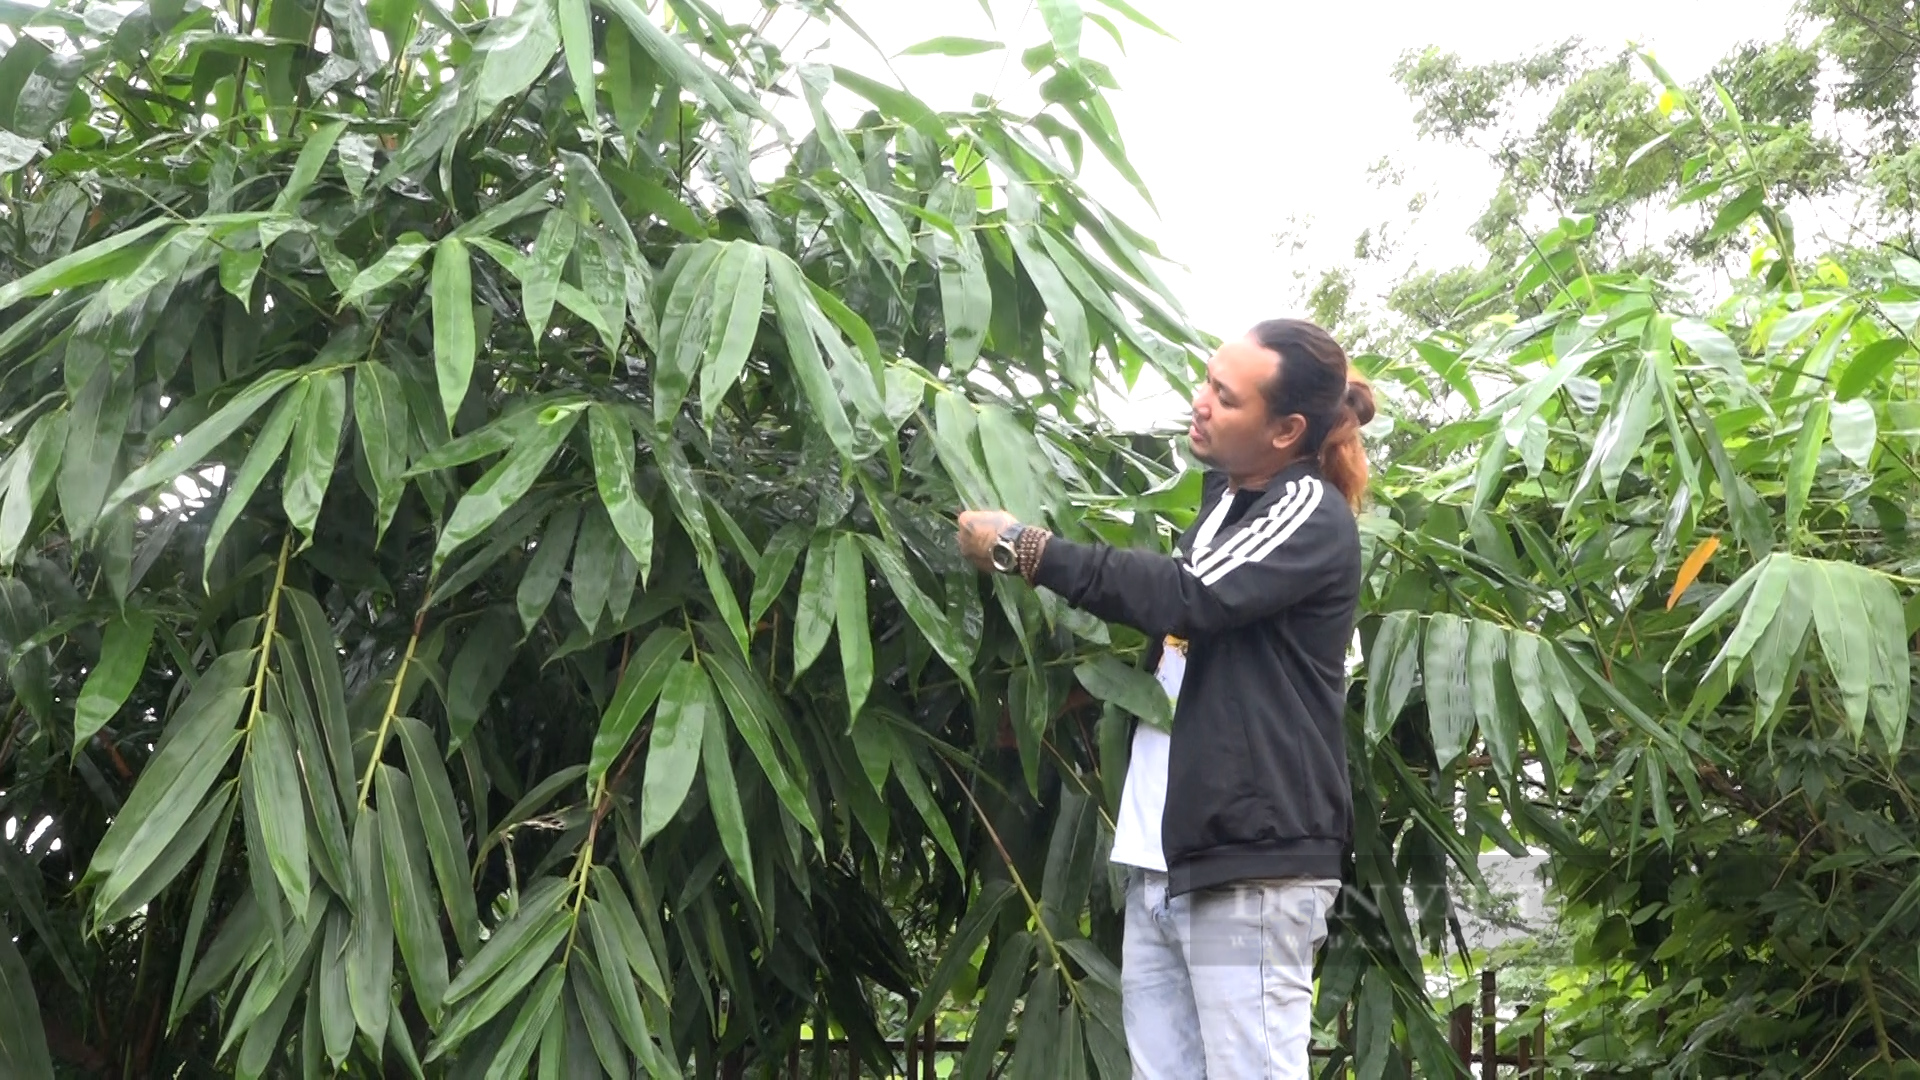 Mỗi tháng, anh nông dân Phú Thọ chế biến 1 vạn cây tre, trúc, xuất bán Hàn Quốc, Ấn Độ - Ảnh 1.